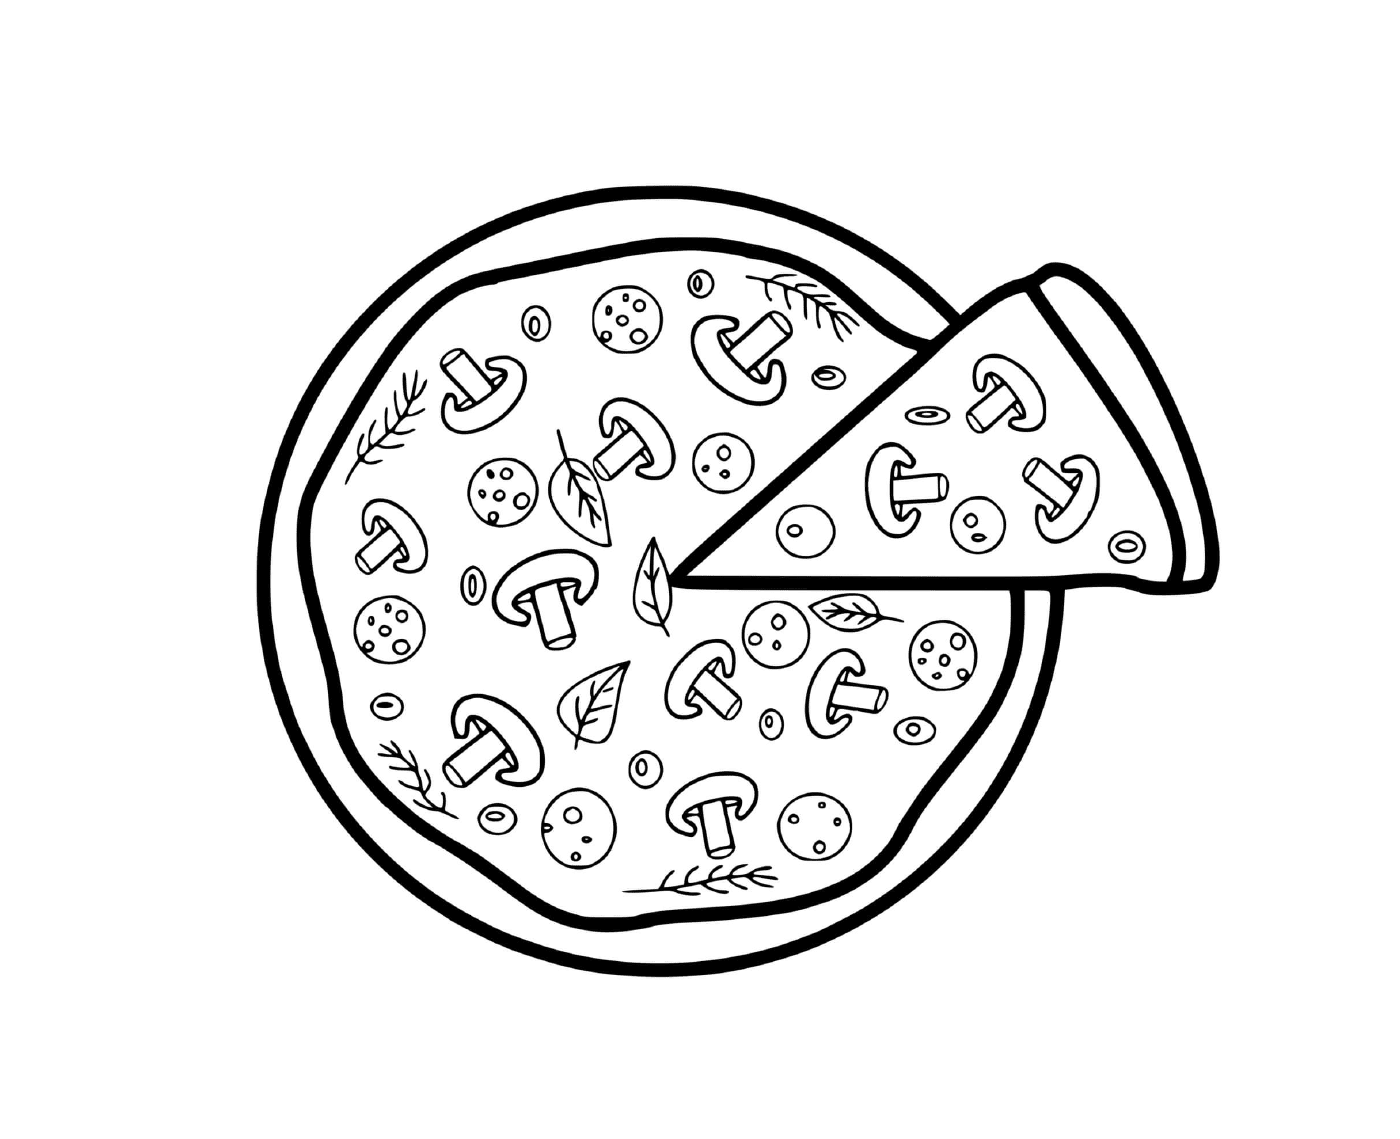  رومانيّاً ببيتزا مع انشوهات 